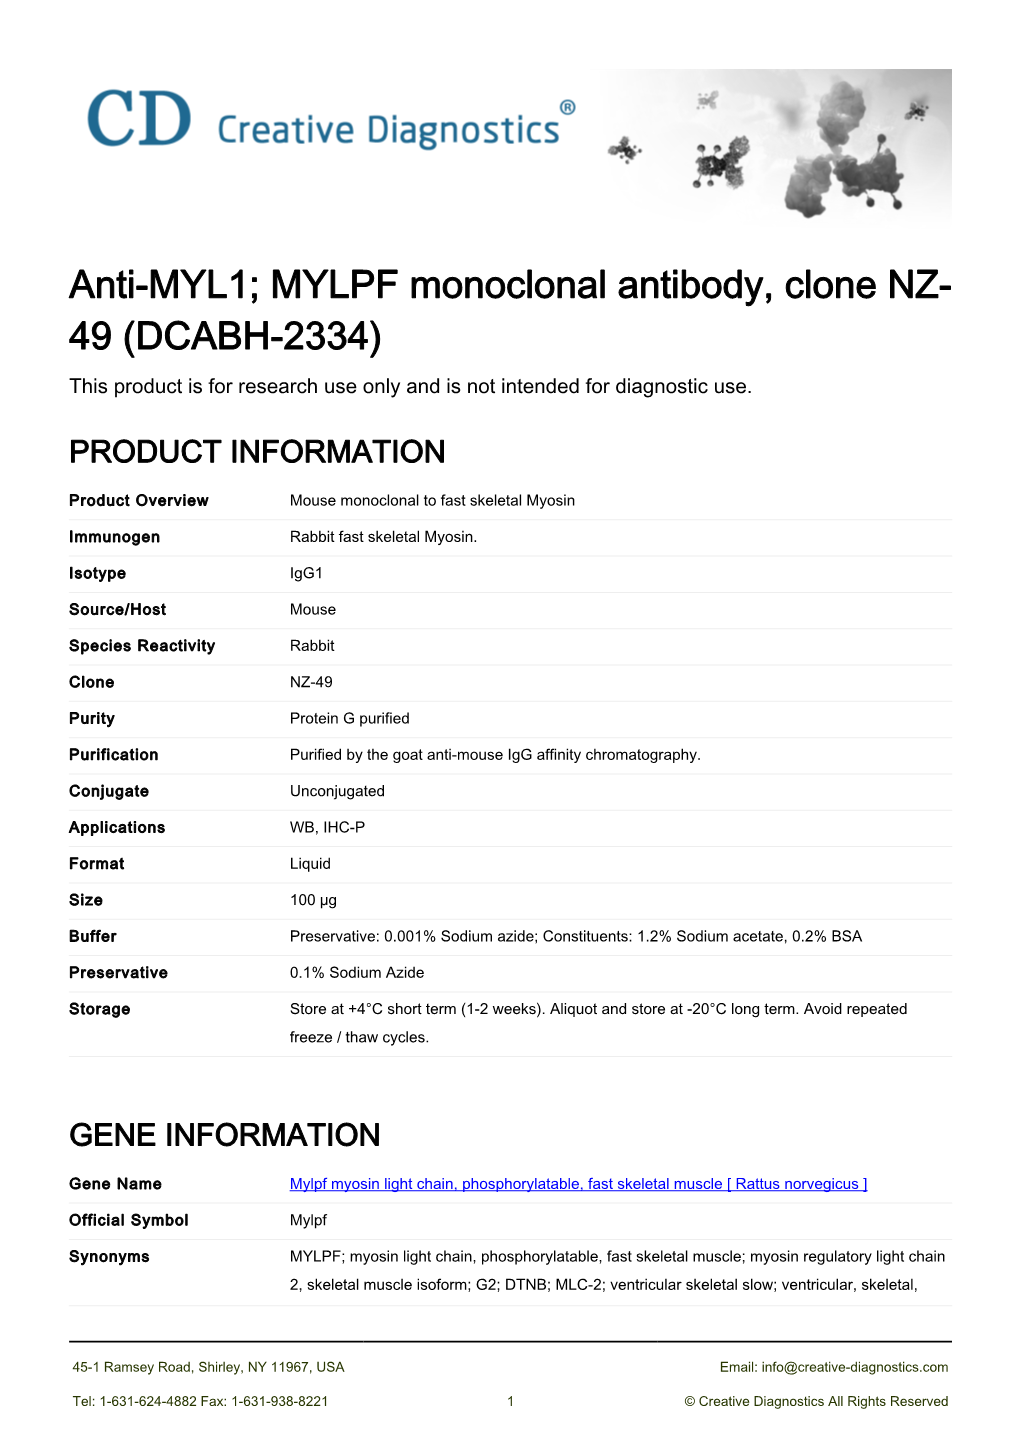 Anti-MYL1; MYLPF Monoclonal Antibody, Clone NZ-49